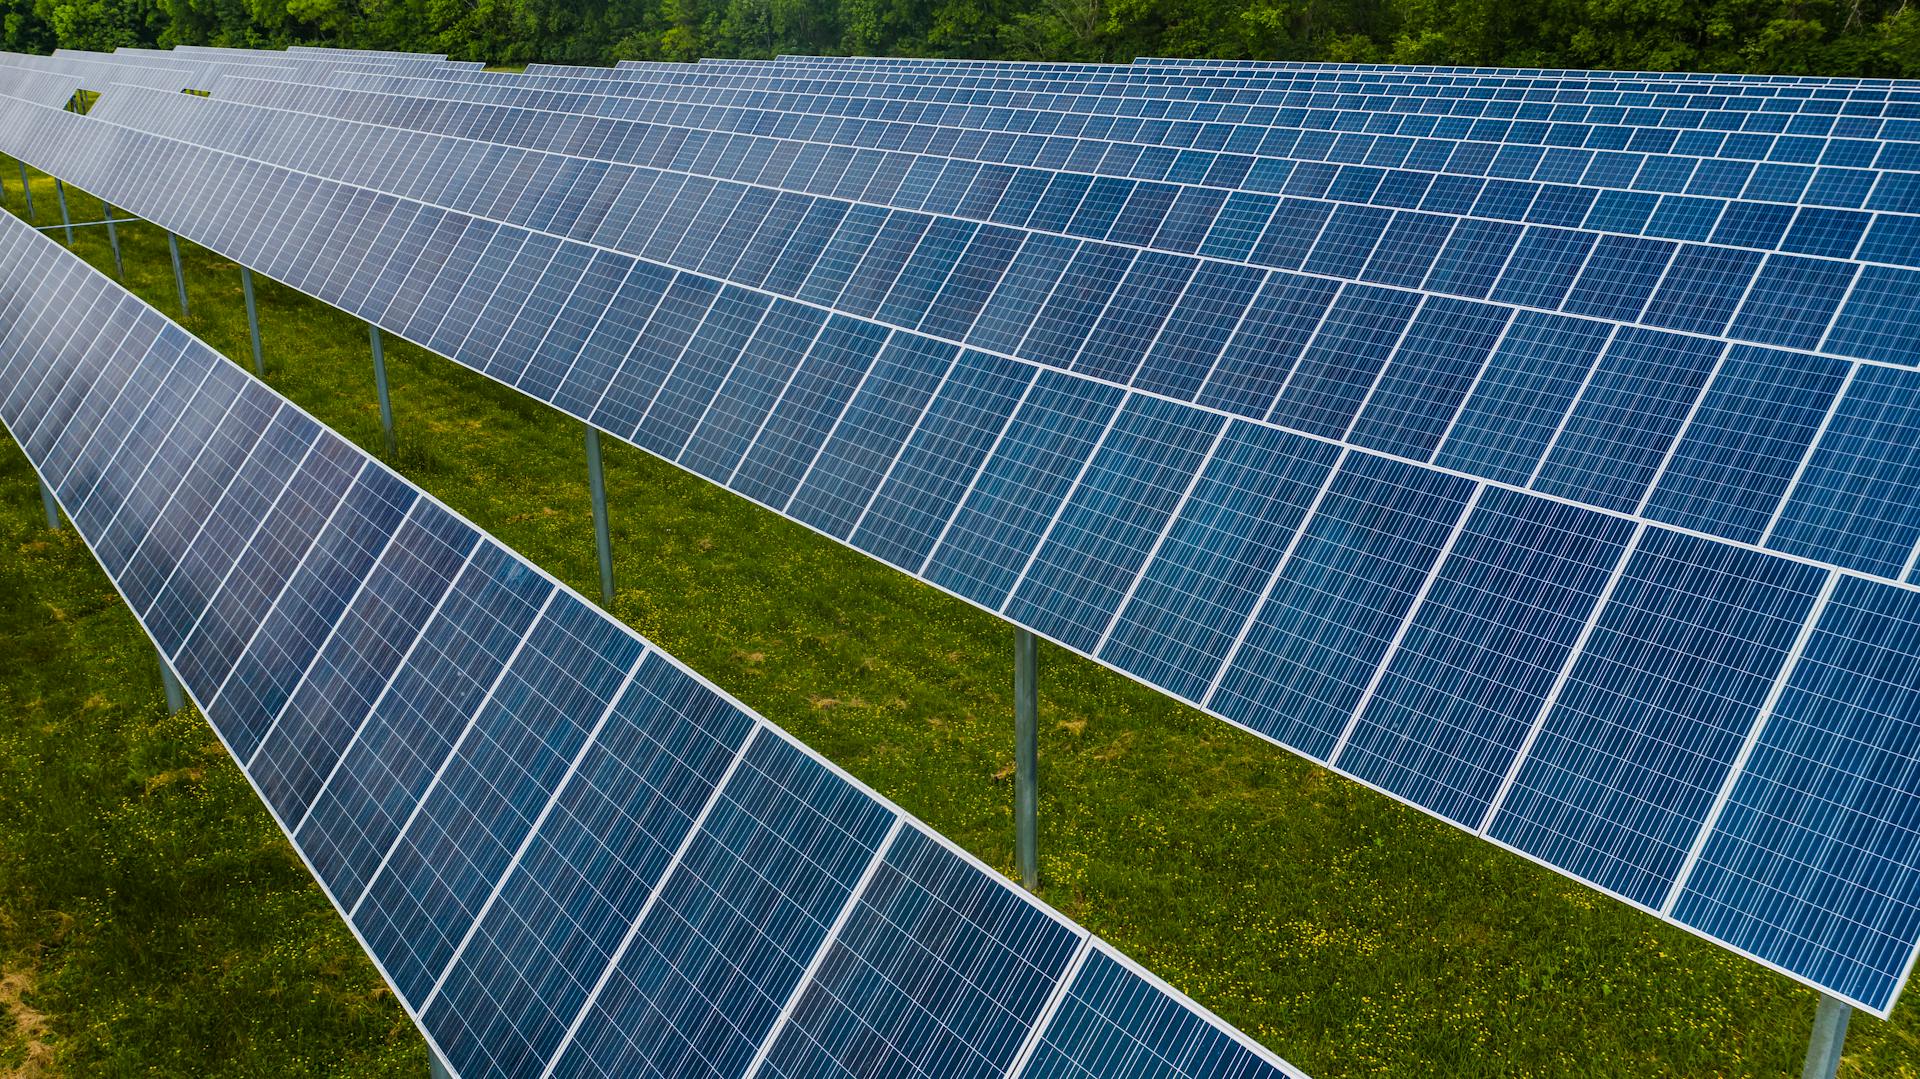 Rows of solar panels on a solar farm